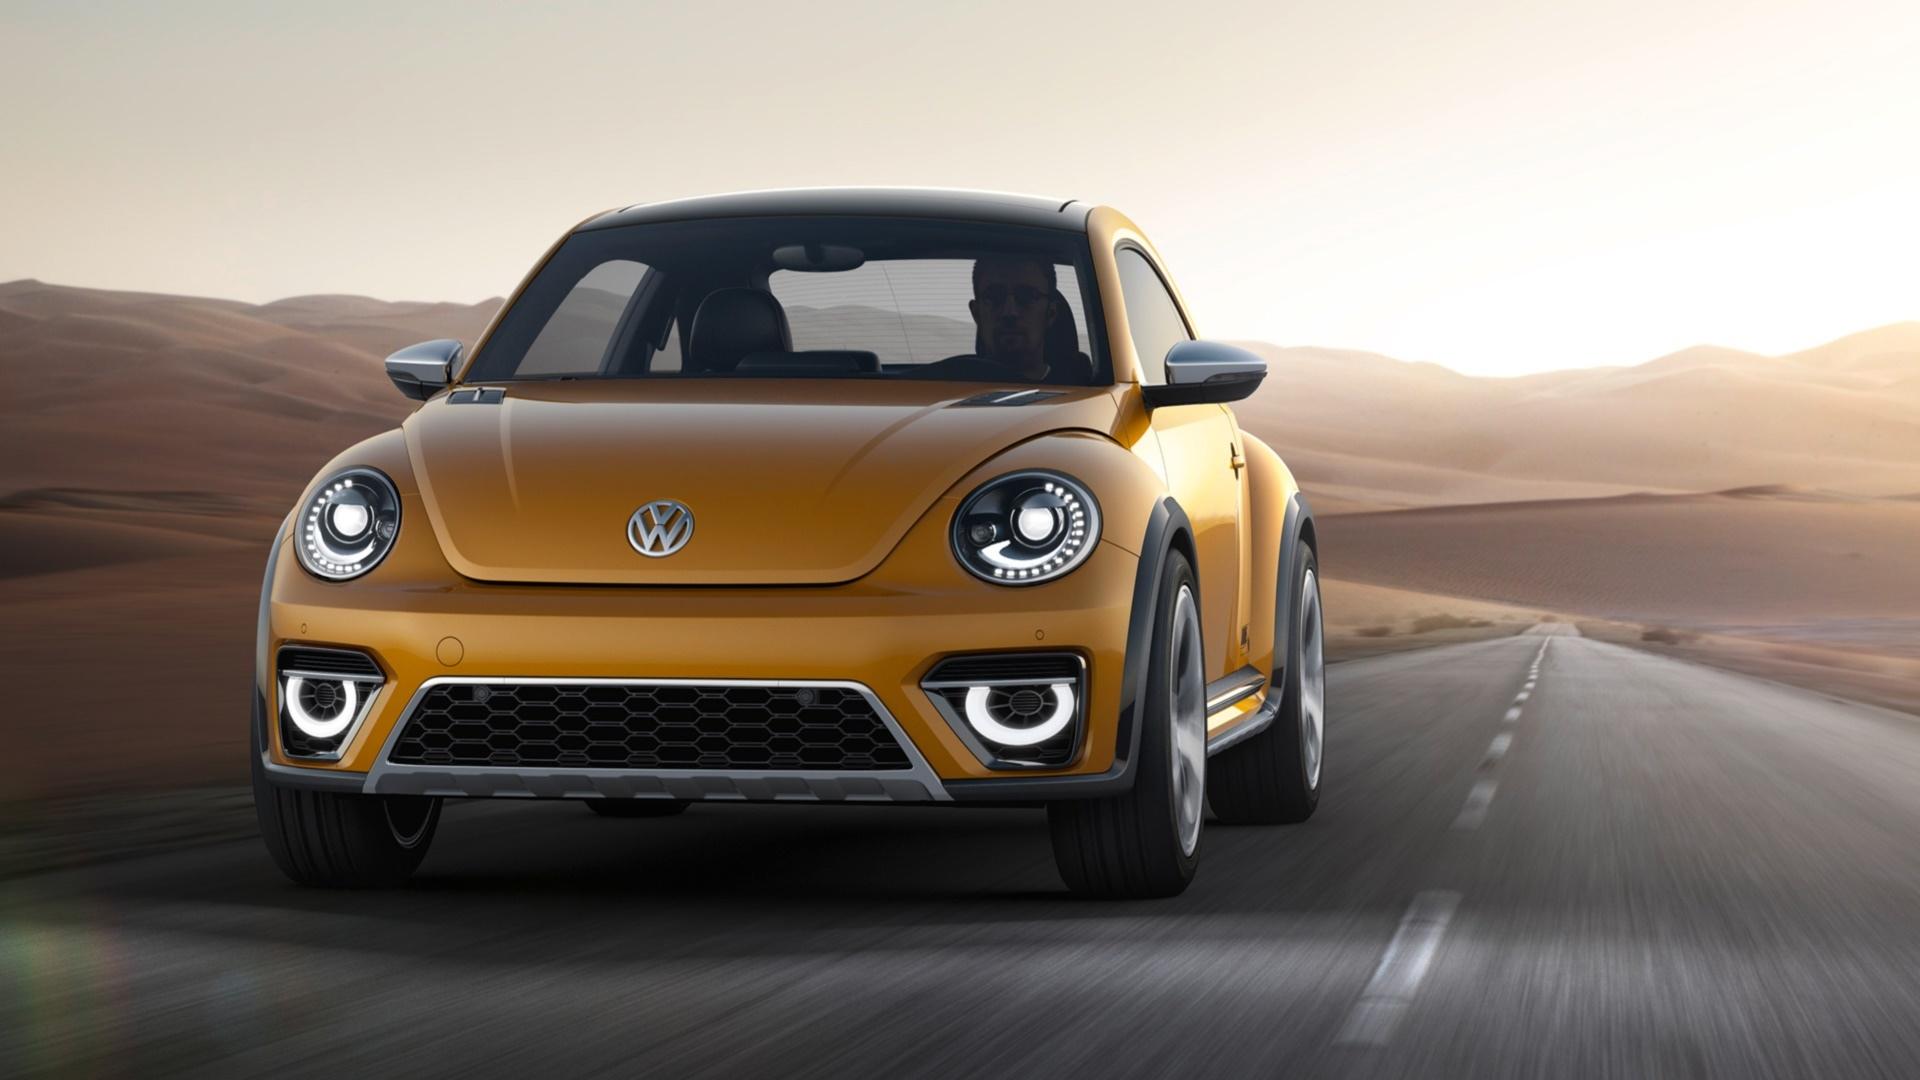 2014 Volkswagen Beetle Dune Concept wallpapers HD quality